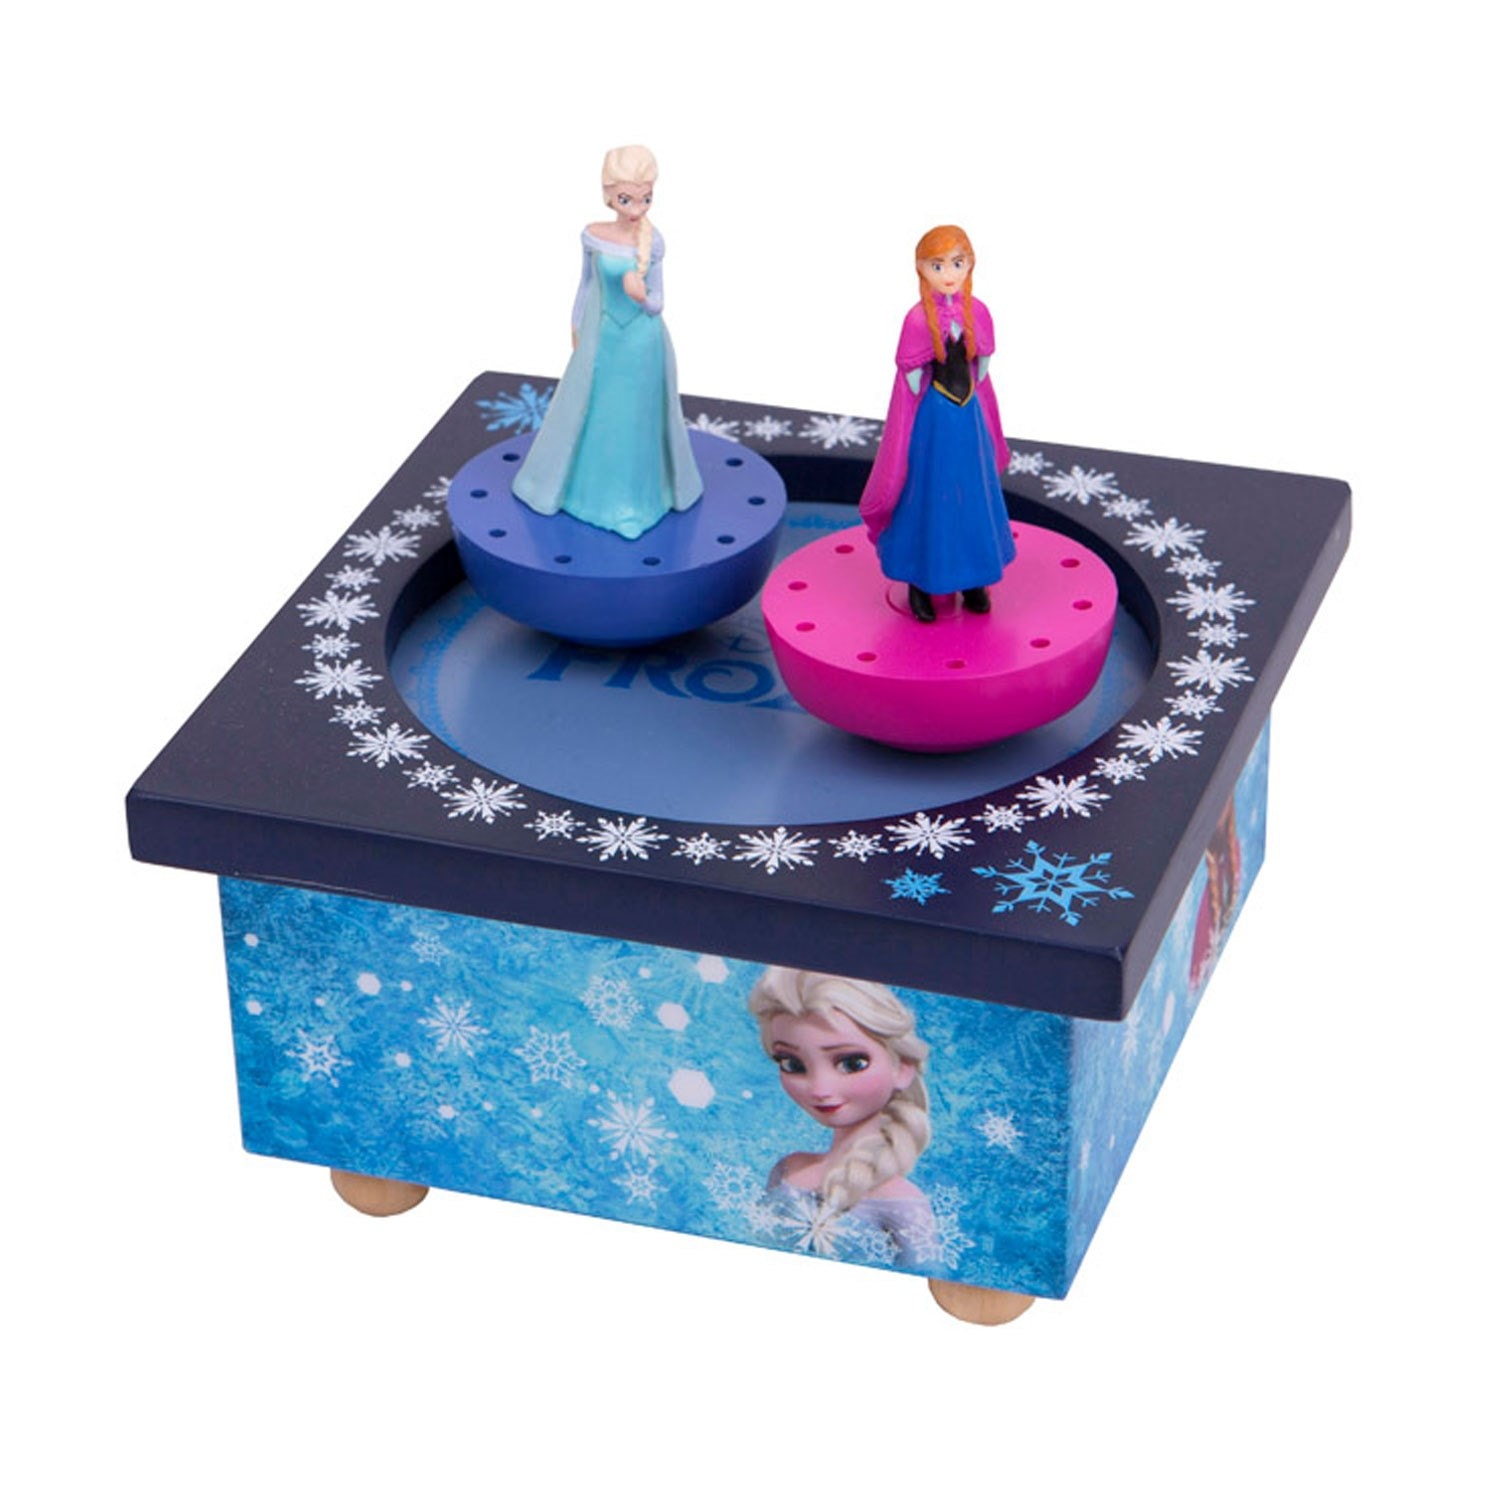 Boite à Musique Magnétique La Reine des Neiges (Frozen) : Elsa et Anna  DISNEY Pas Cher 